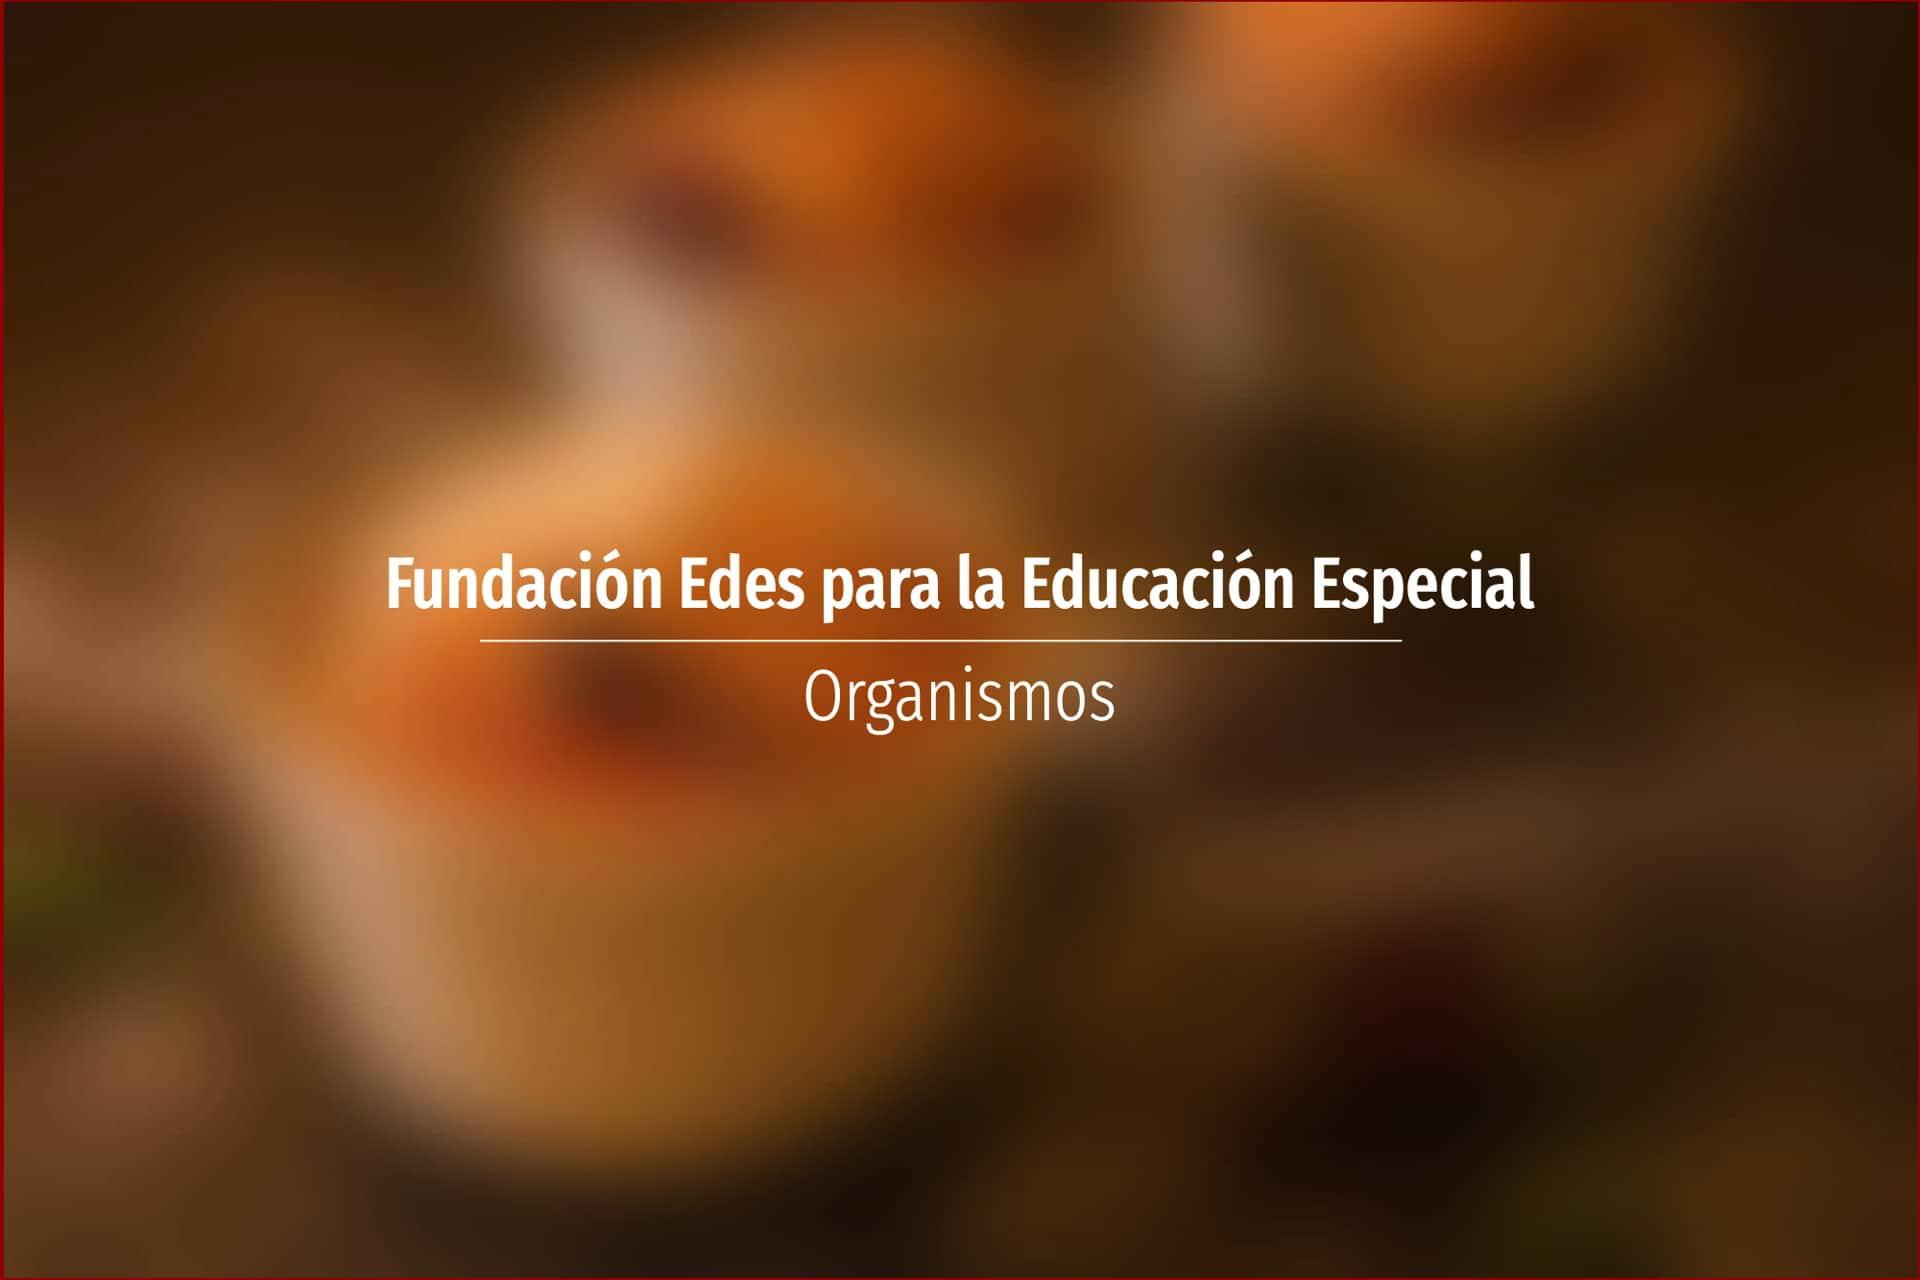 Fundación Edes para la Educación Especial